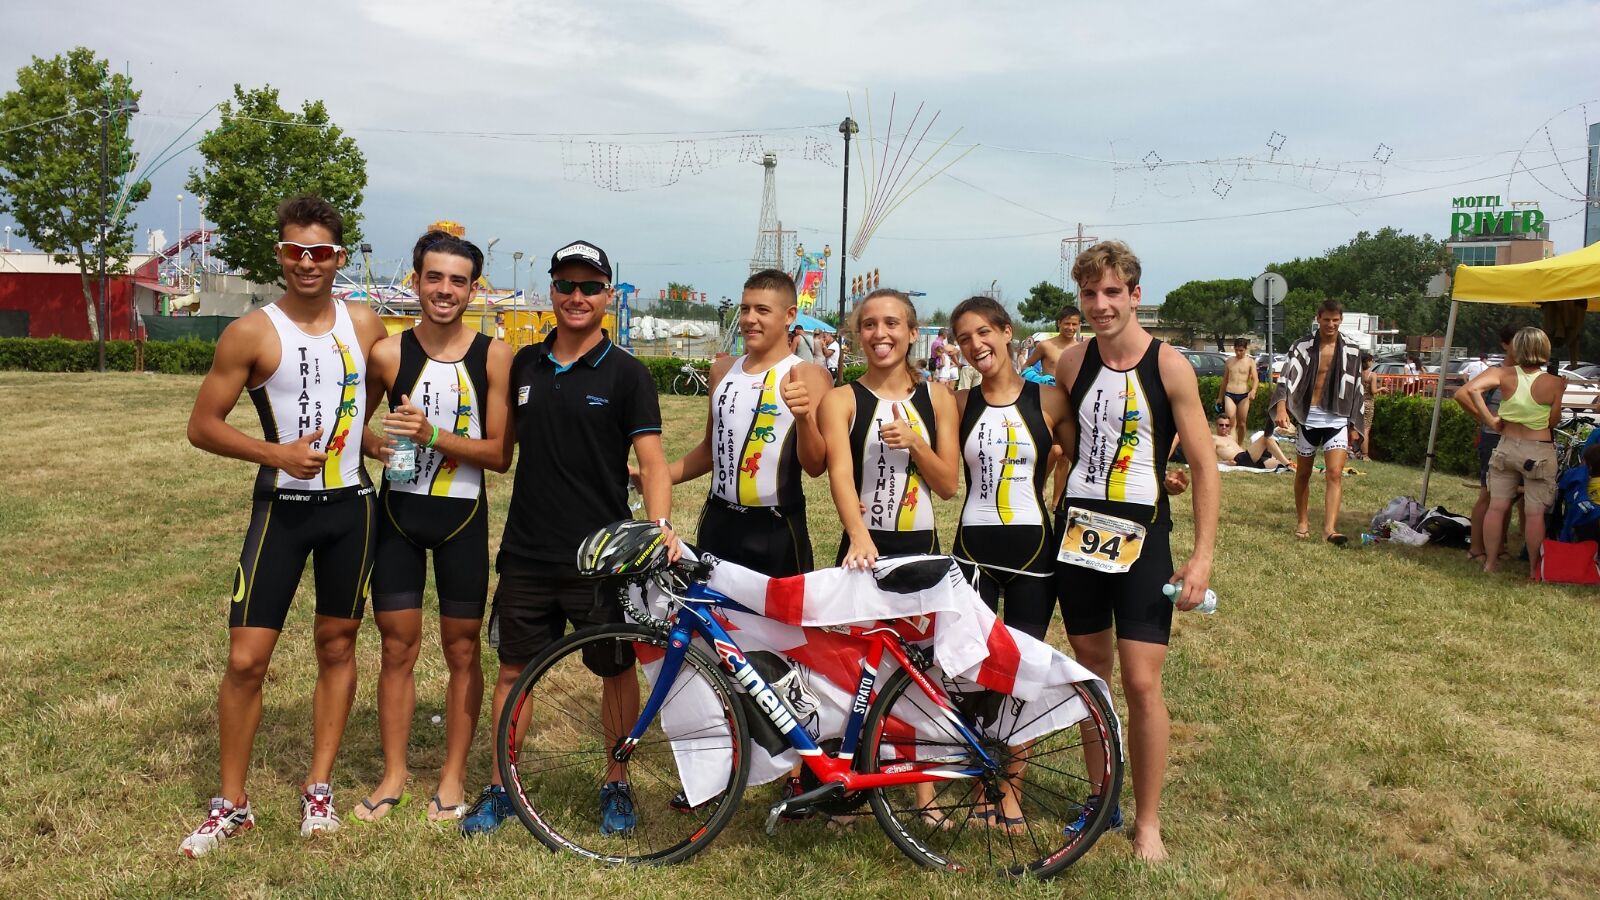 Campionati Italiani di Triathlon Individuali e a squadre Giovani, 23 - 24 Luglio,  a Montesilvano (Abruzzo), il Triathlon Team Sassari ha rappresentato la Sardegna